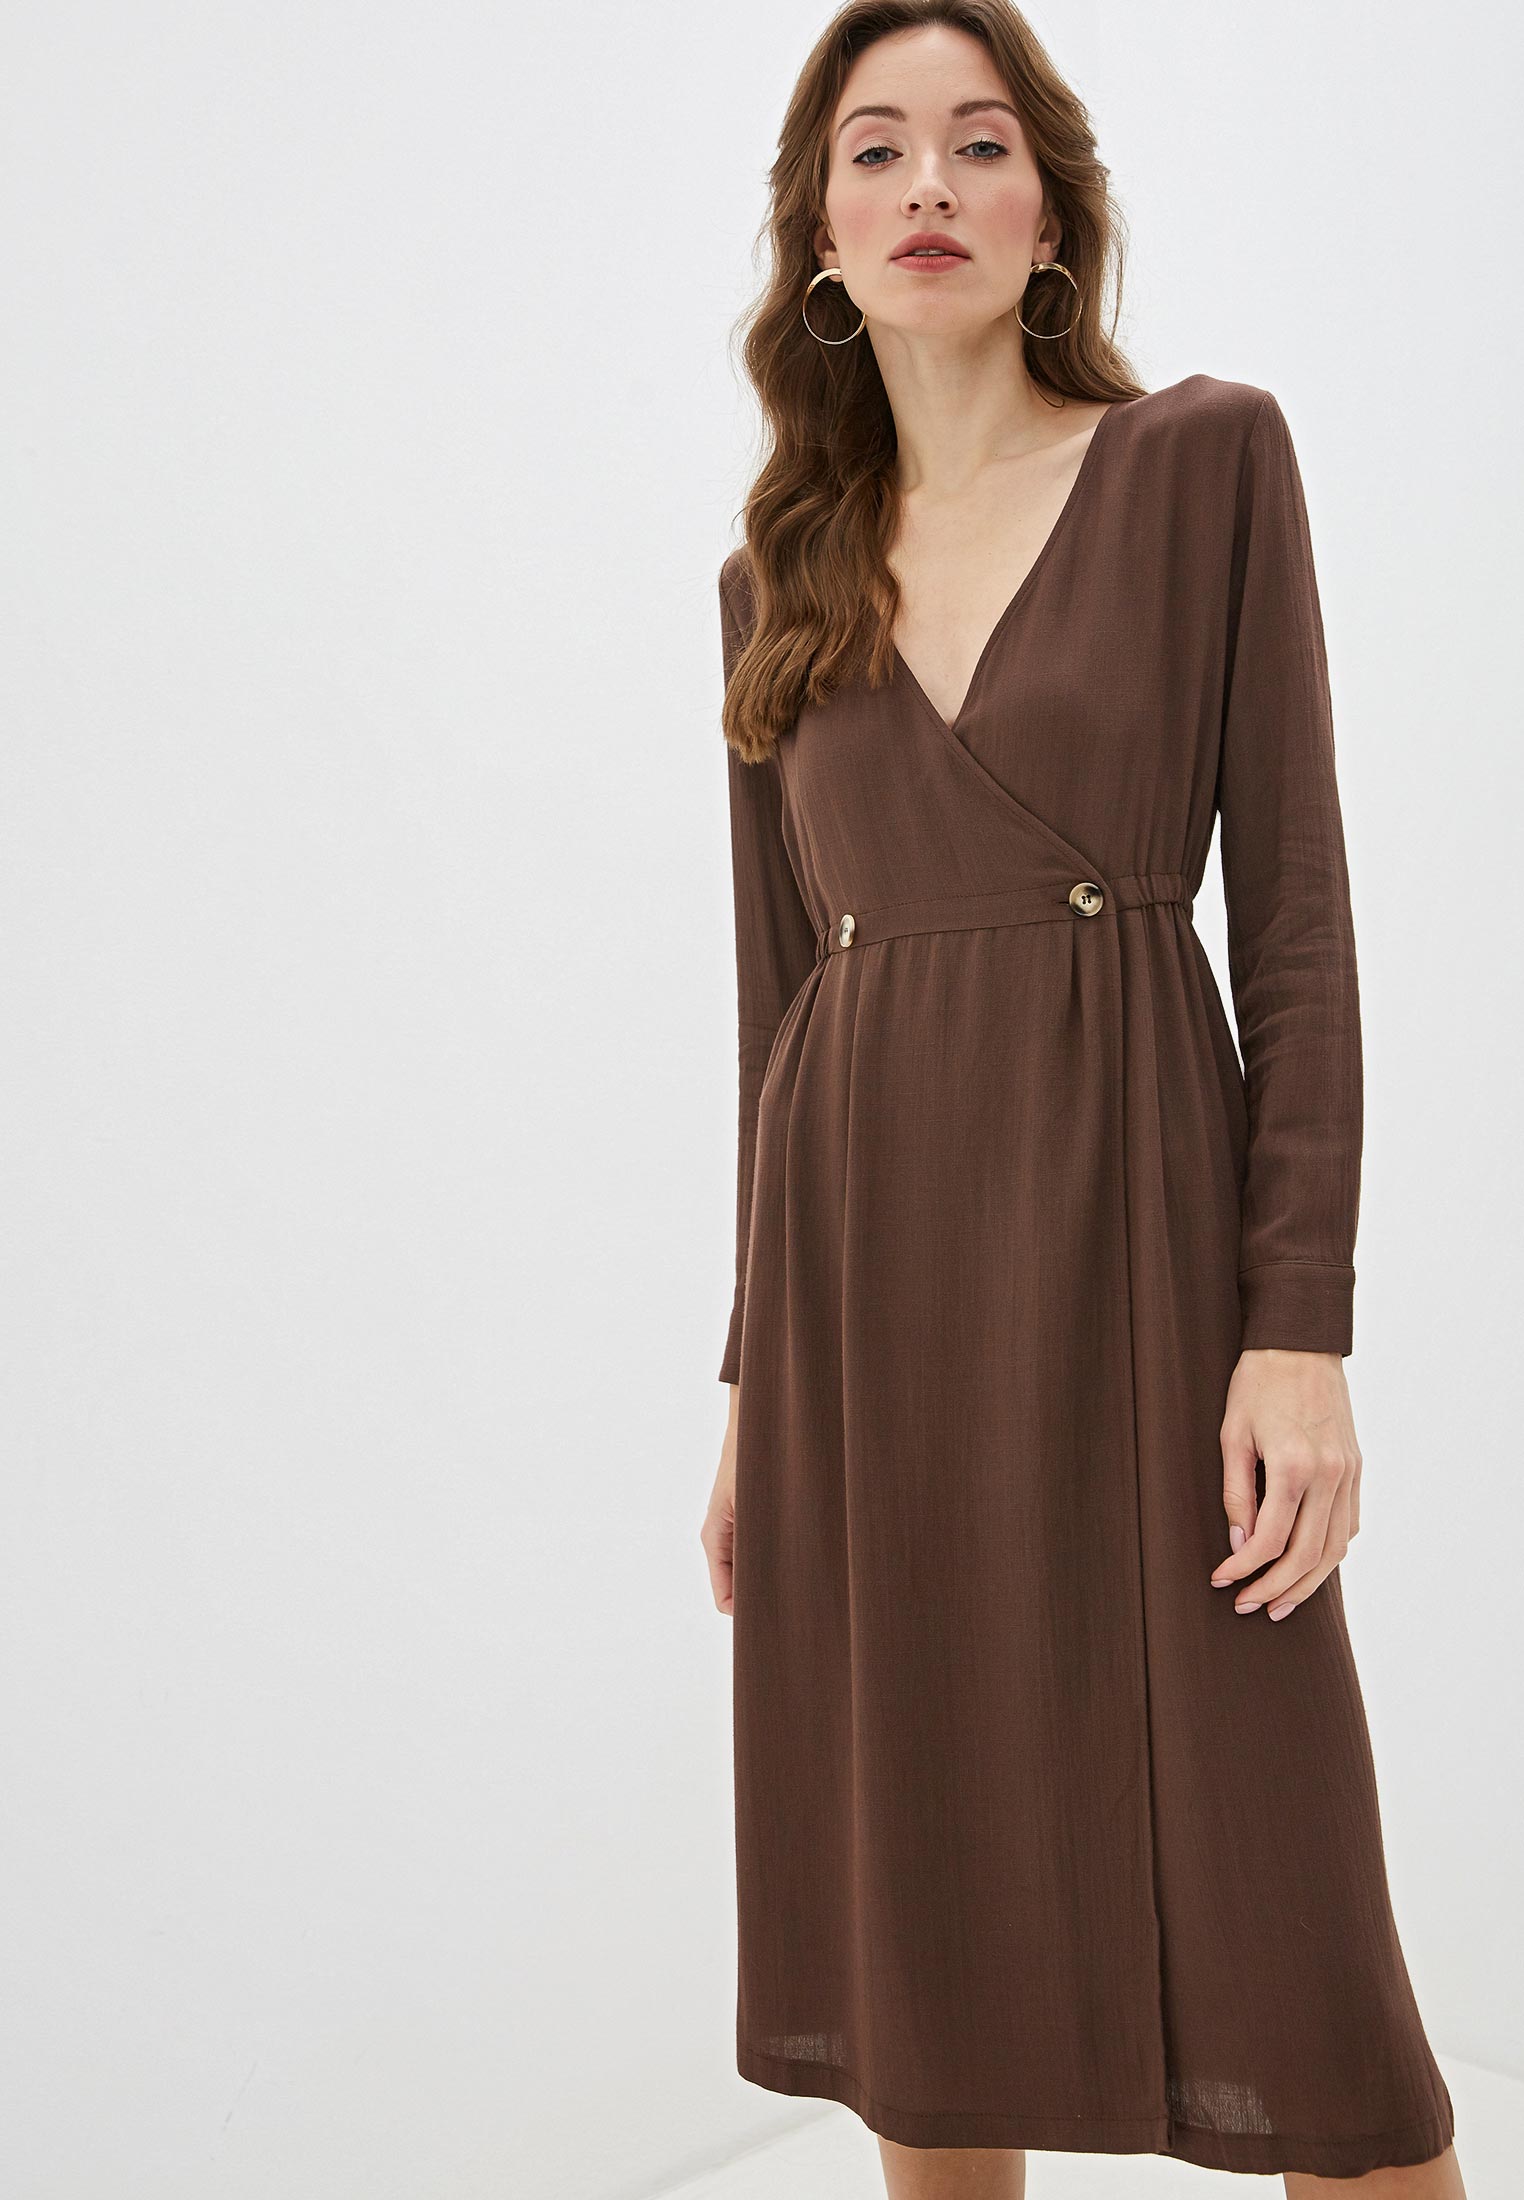 Женская коричневая платья. Sweewe Paris платье. Платье коричневое. Старомодное коричневое платье. Сарафан коричневый женский кожаный на запах.